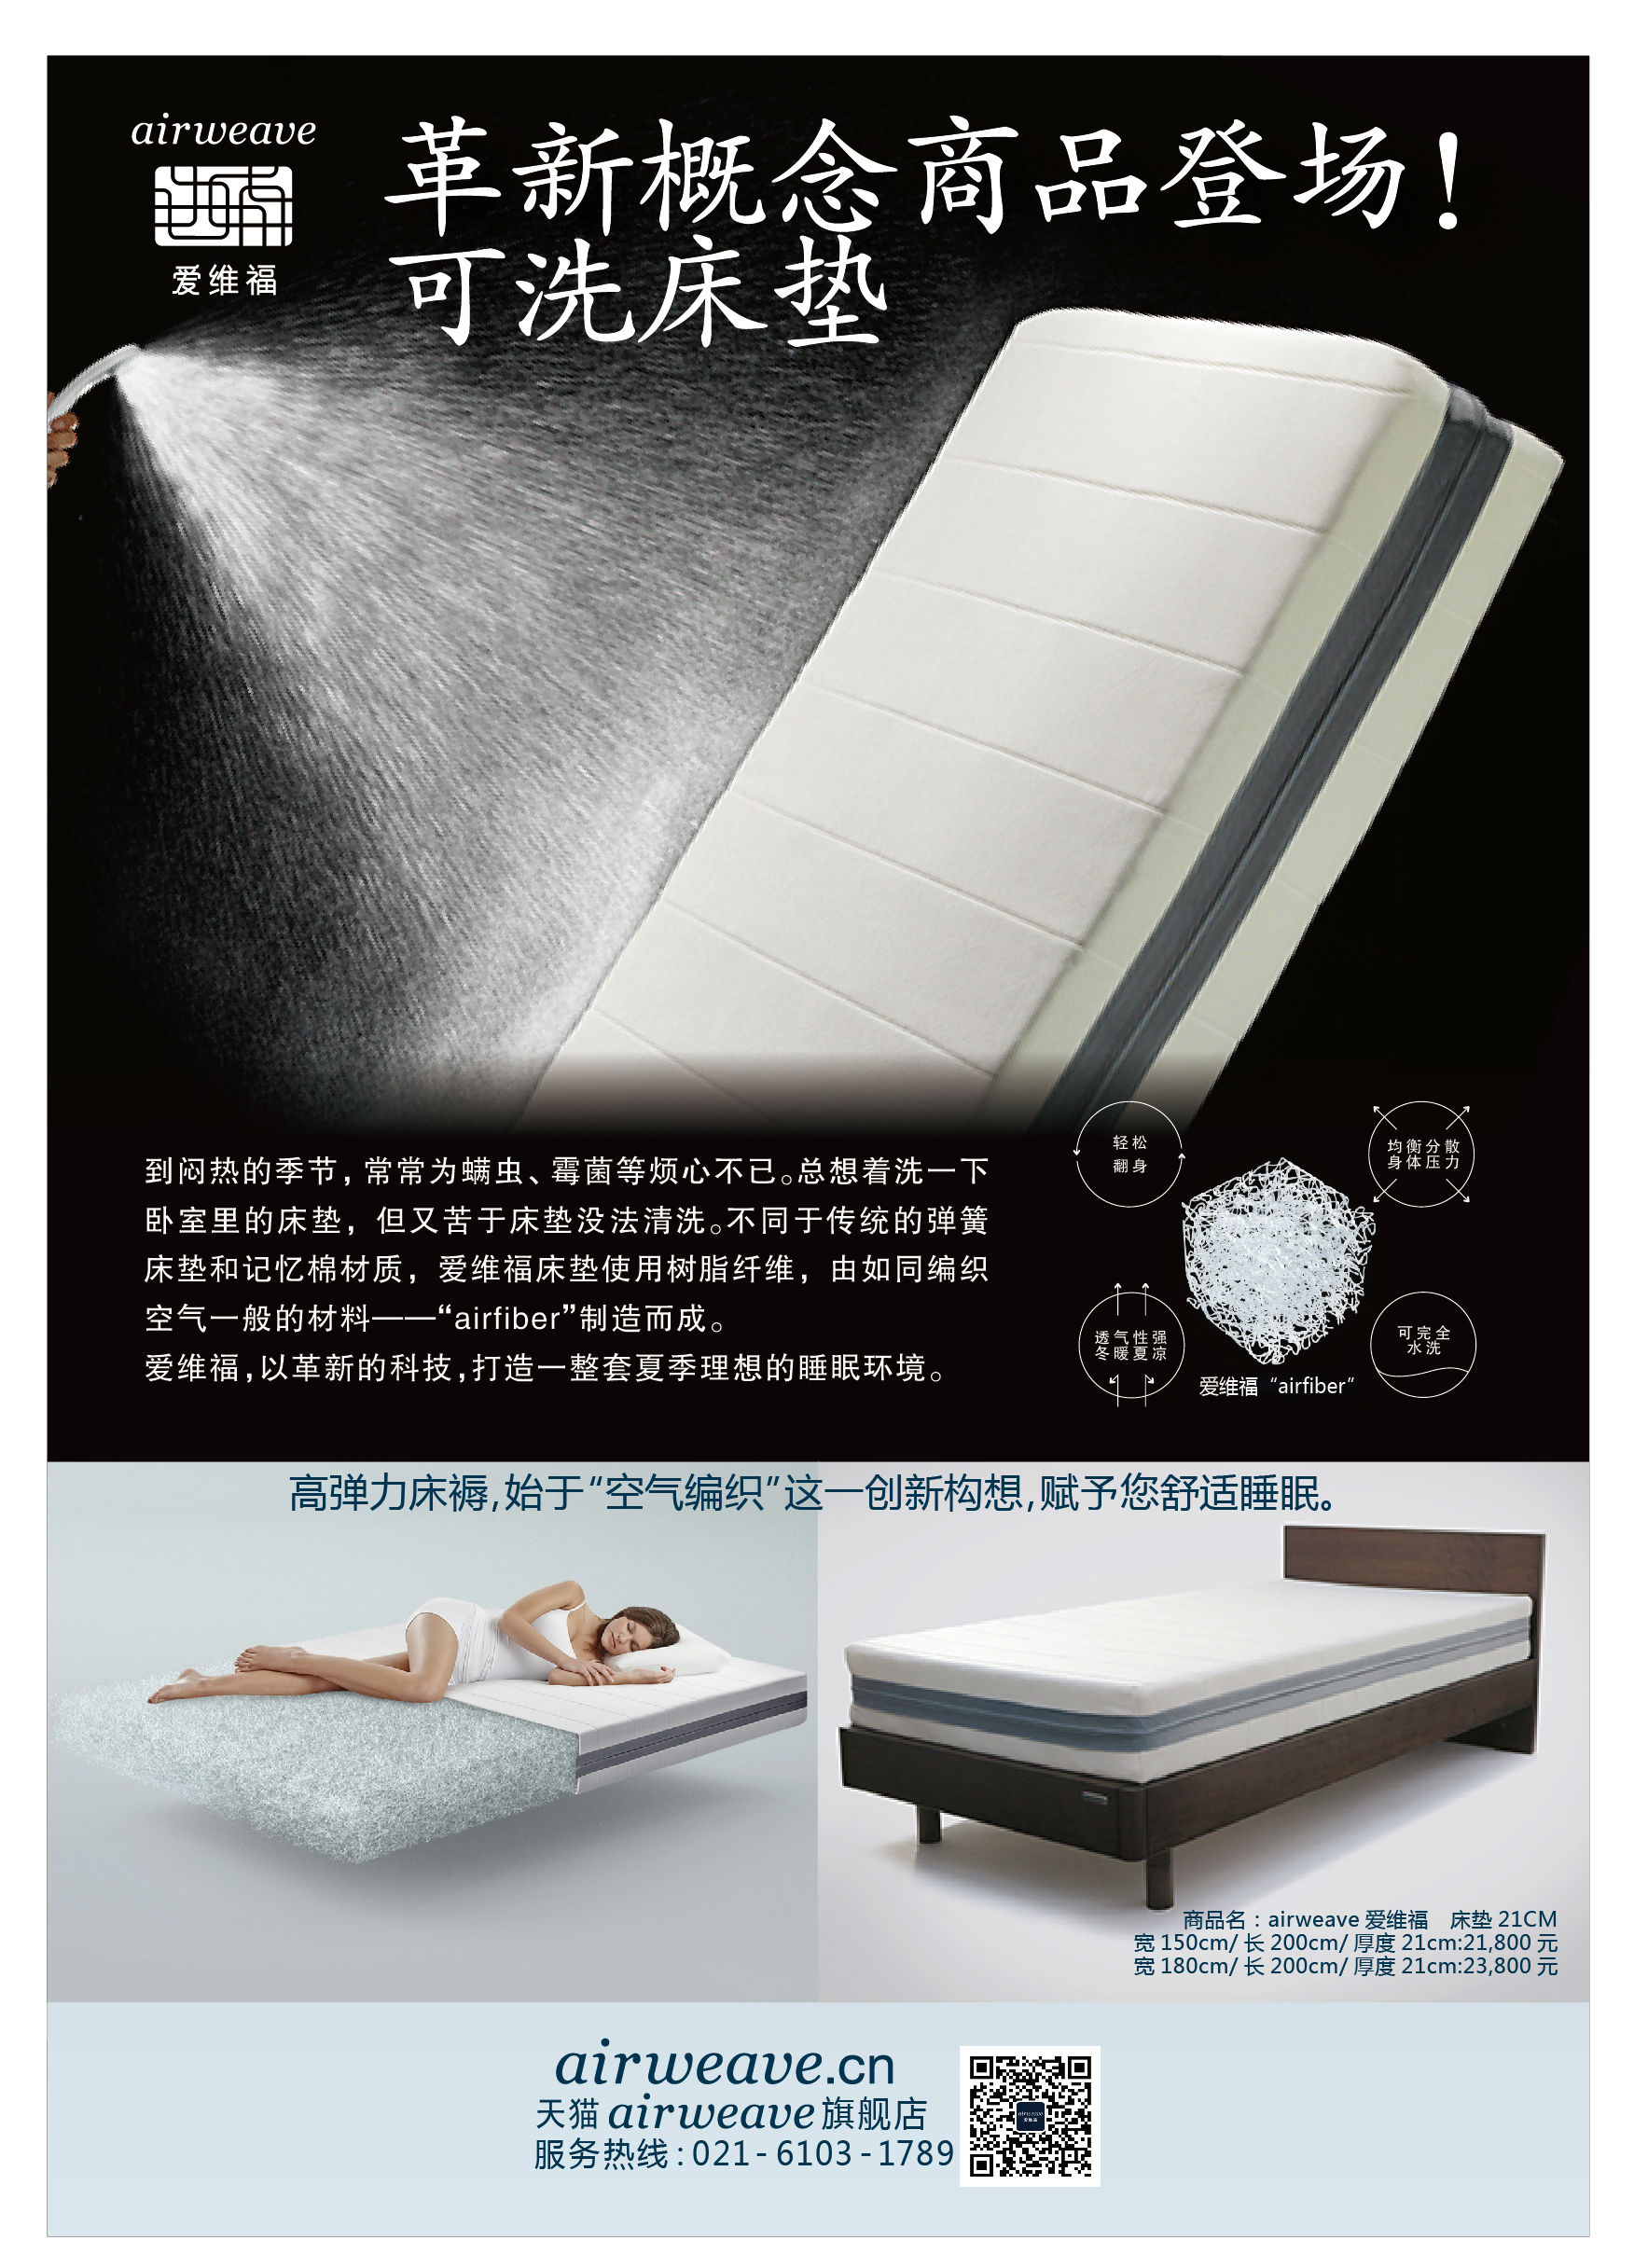 中国奥委会床垫和床褥供应商airweave爱维福新品问世